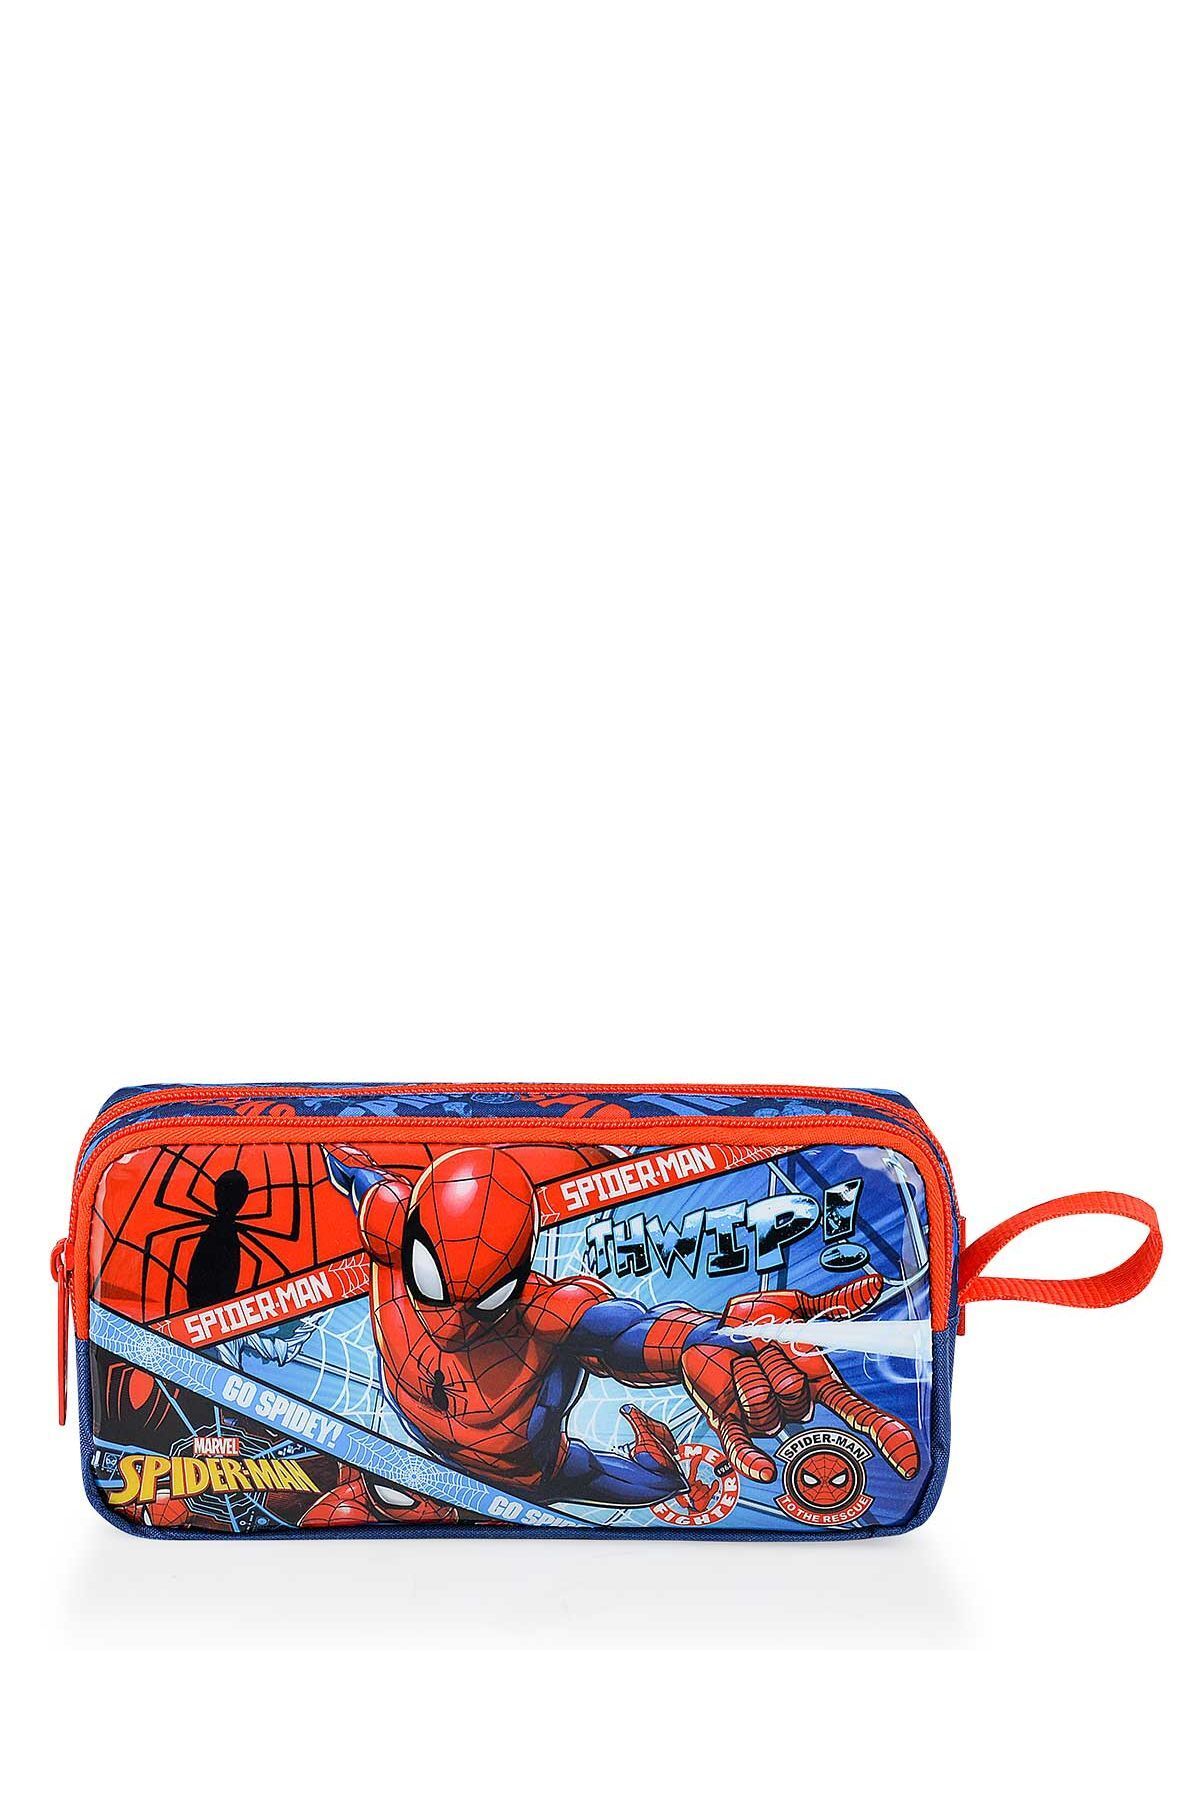 Spiderman Erkek Çocuk Spider-Man Spiderman Hawk Go W2 Erkek Çocuk Kalemlik OTTO-48114